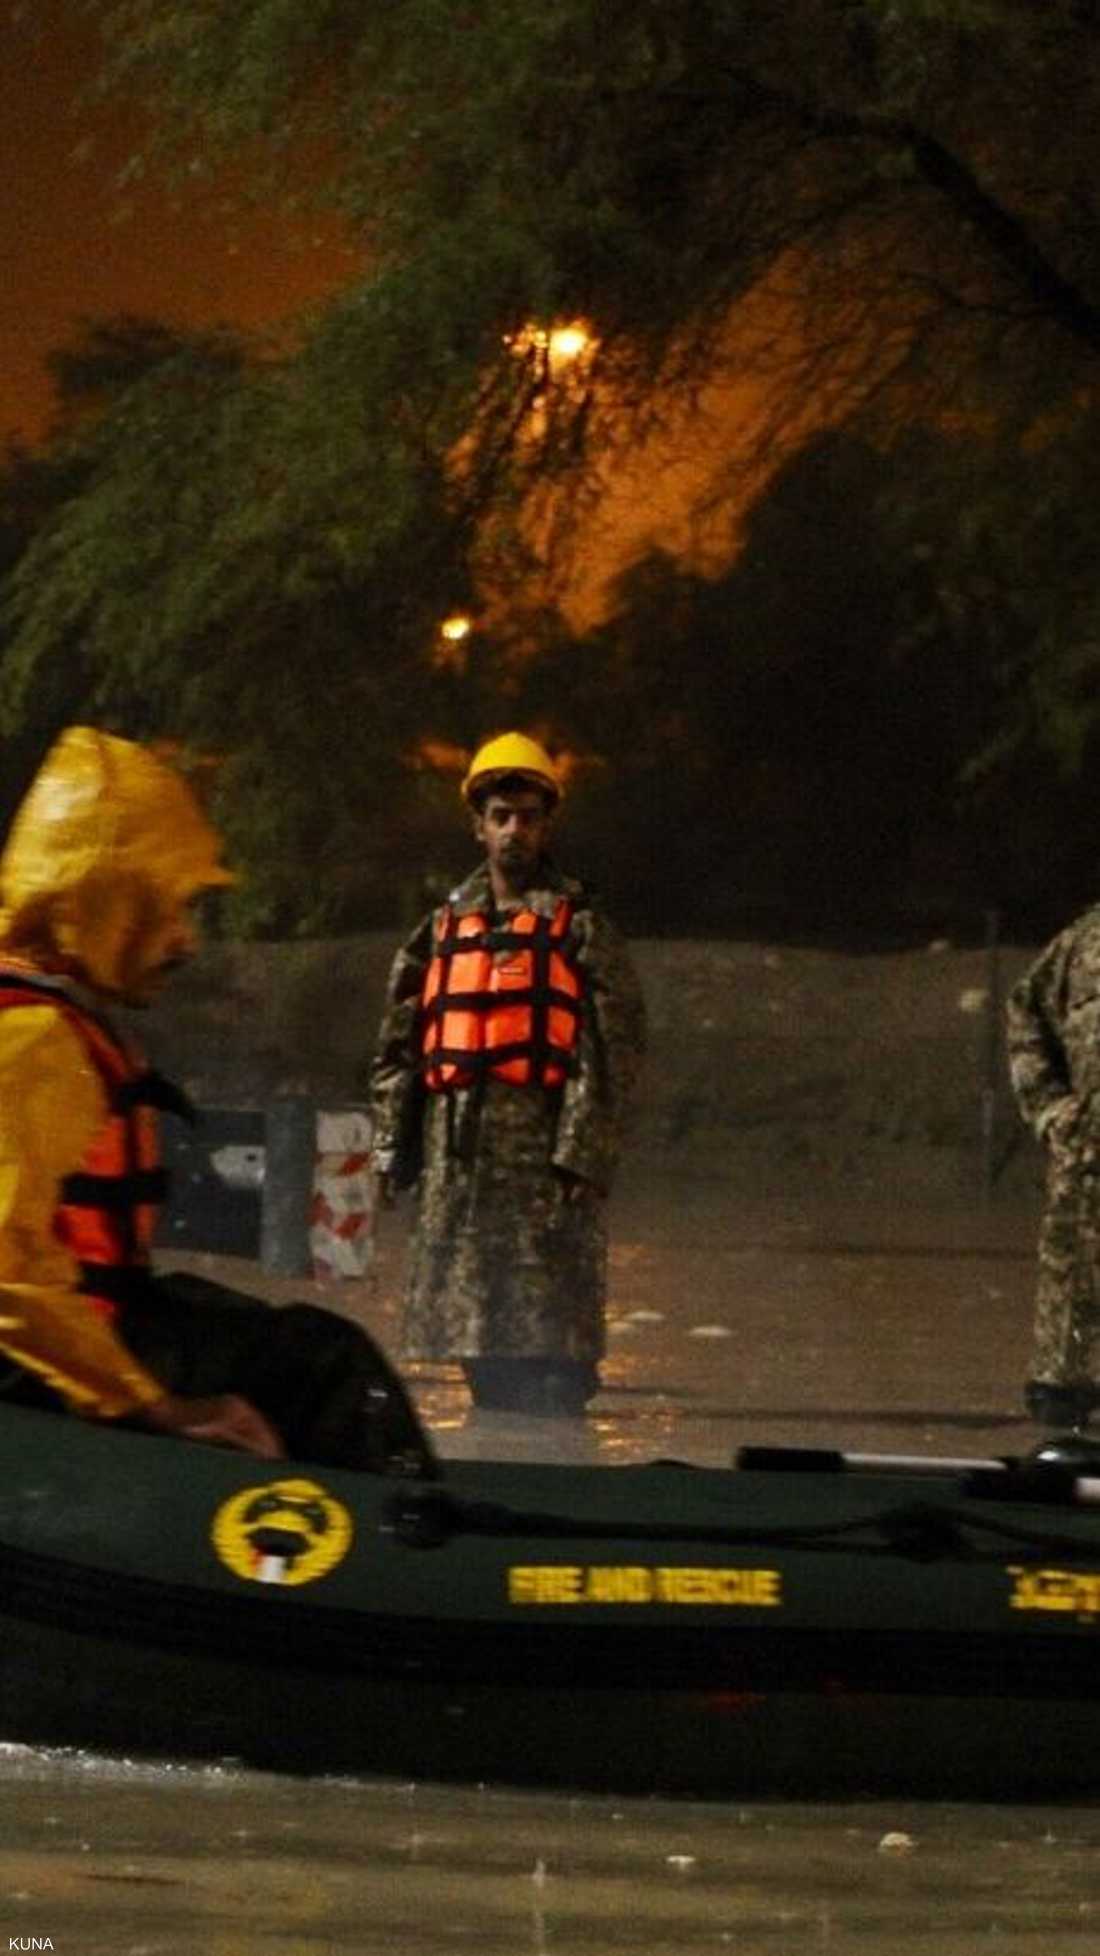 رجال الحرس الوطني خلال القيام بعمليات إنقاذ بالمراكب